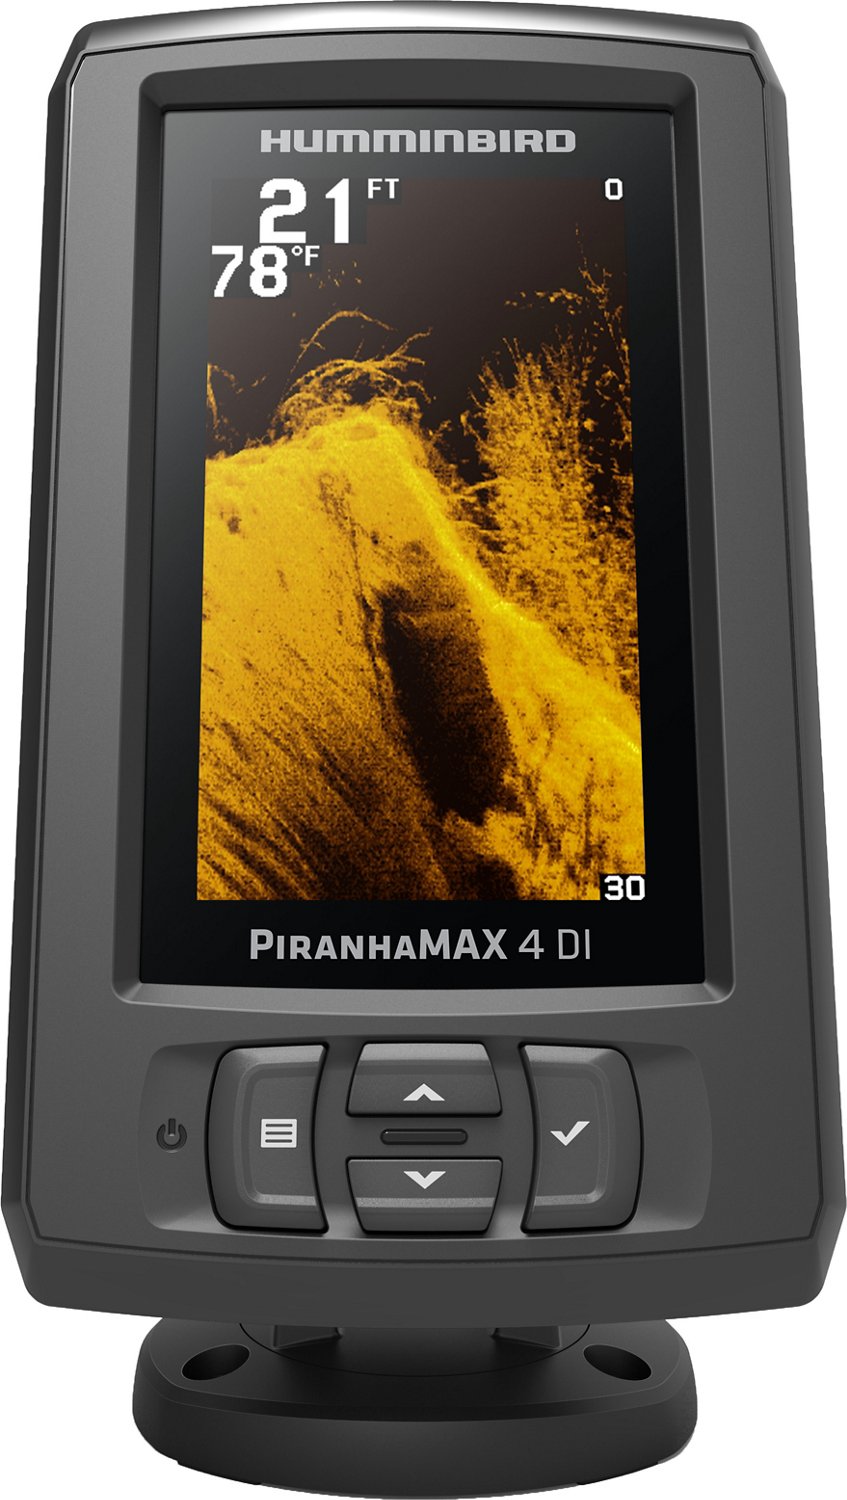 Humminbird PiranhaMAX 4 DI Fishfinder                                                                                            - view number 1 selected